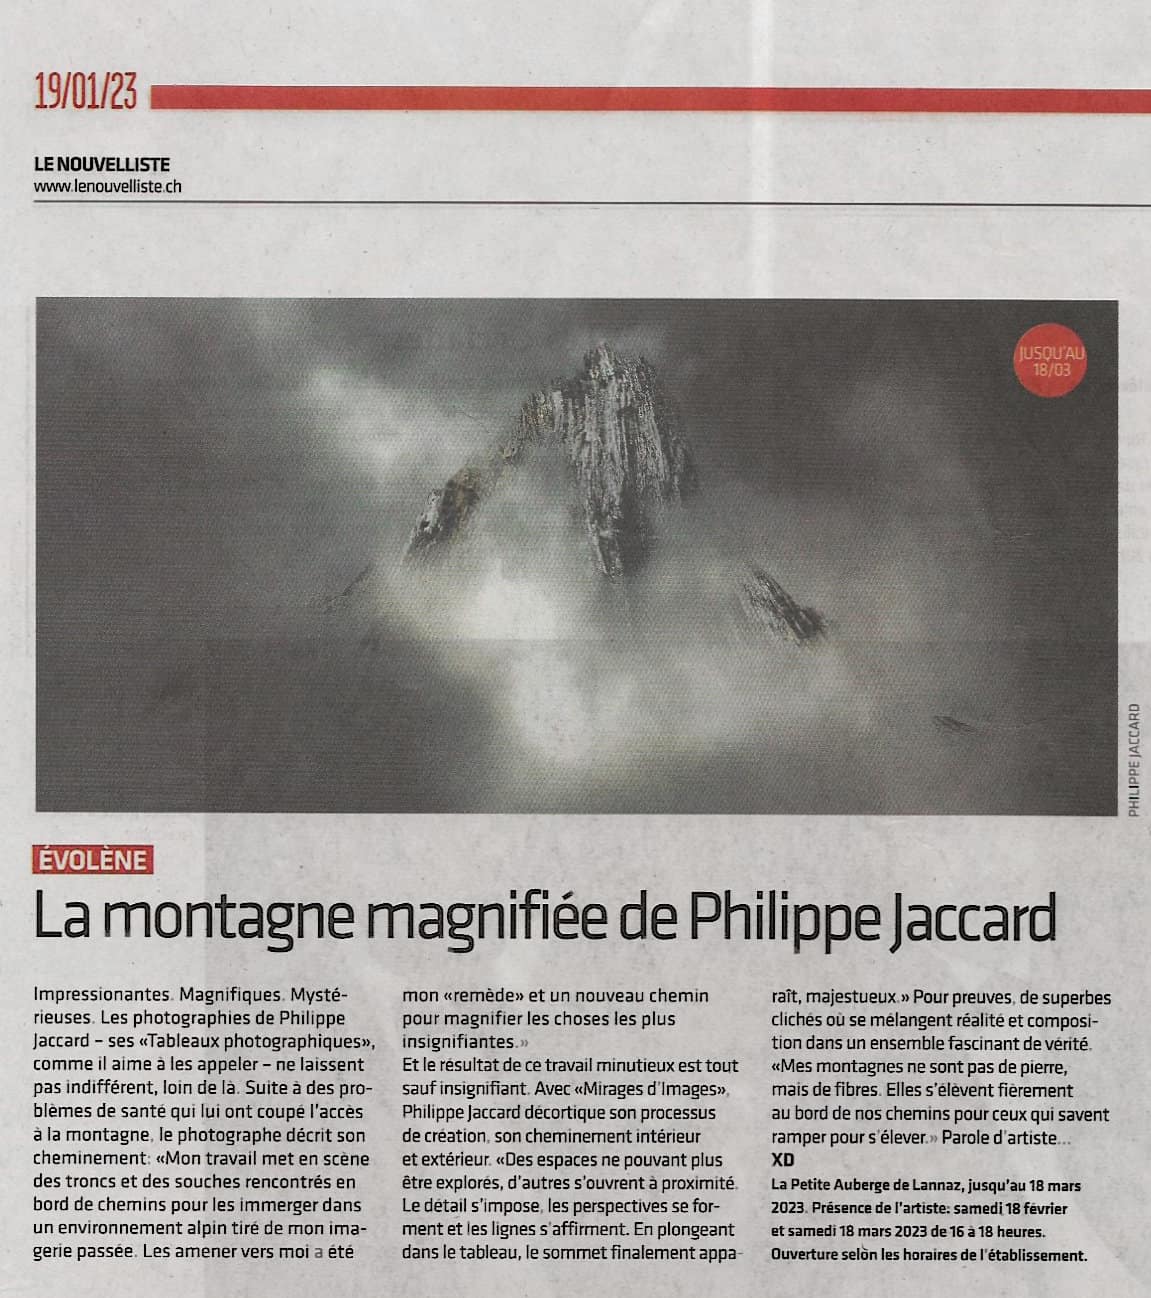 Articles de presse - Près de chez moi -Le Nouvelliste 19.01.2023 exposition Lannaz Philippe Jaccard